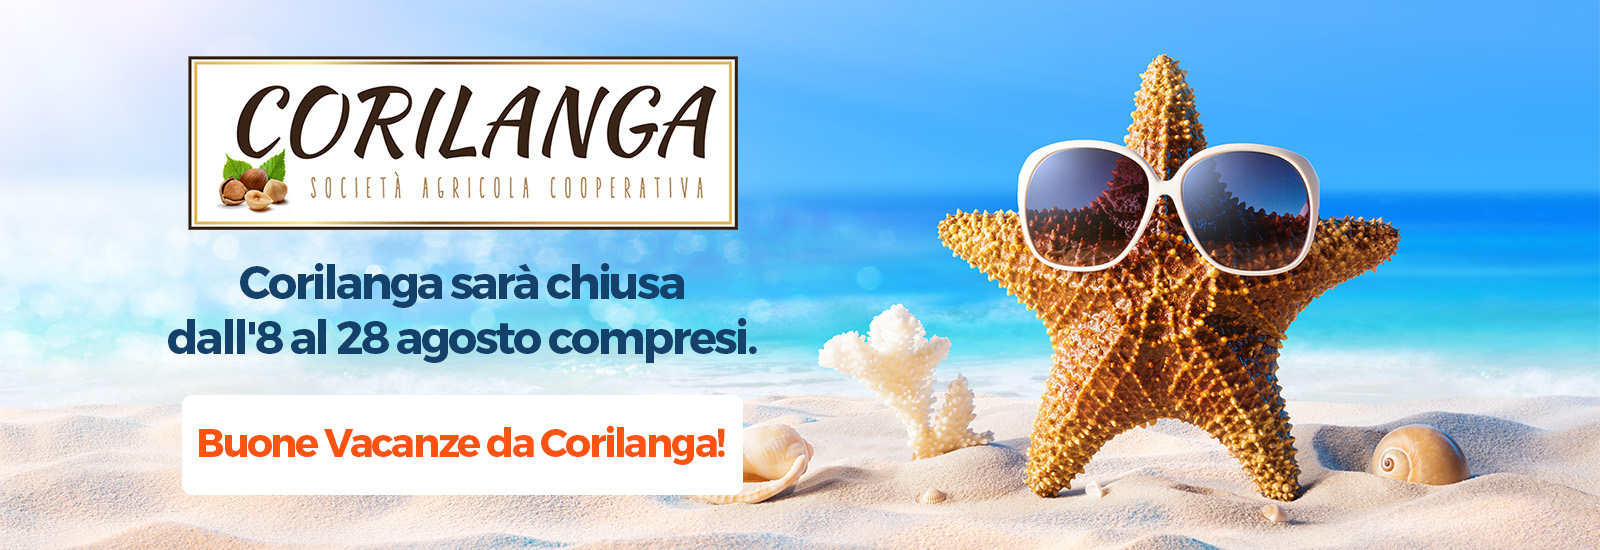 Corilanga sarà chiusa dall'8 al 28 agosto compresi. Buone Vacanze da Corilanga!